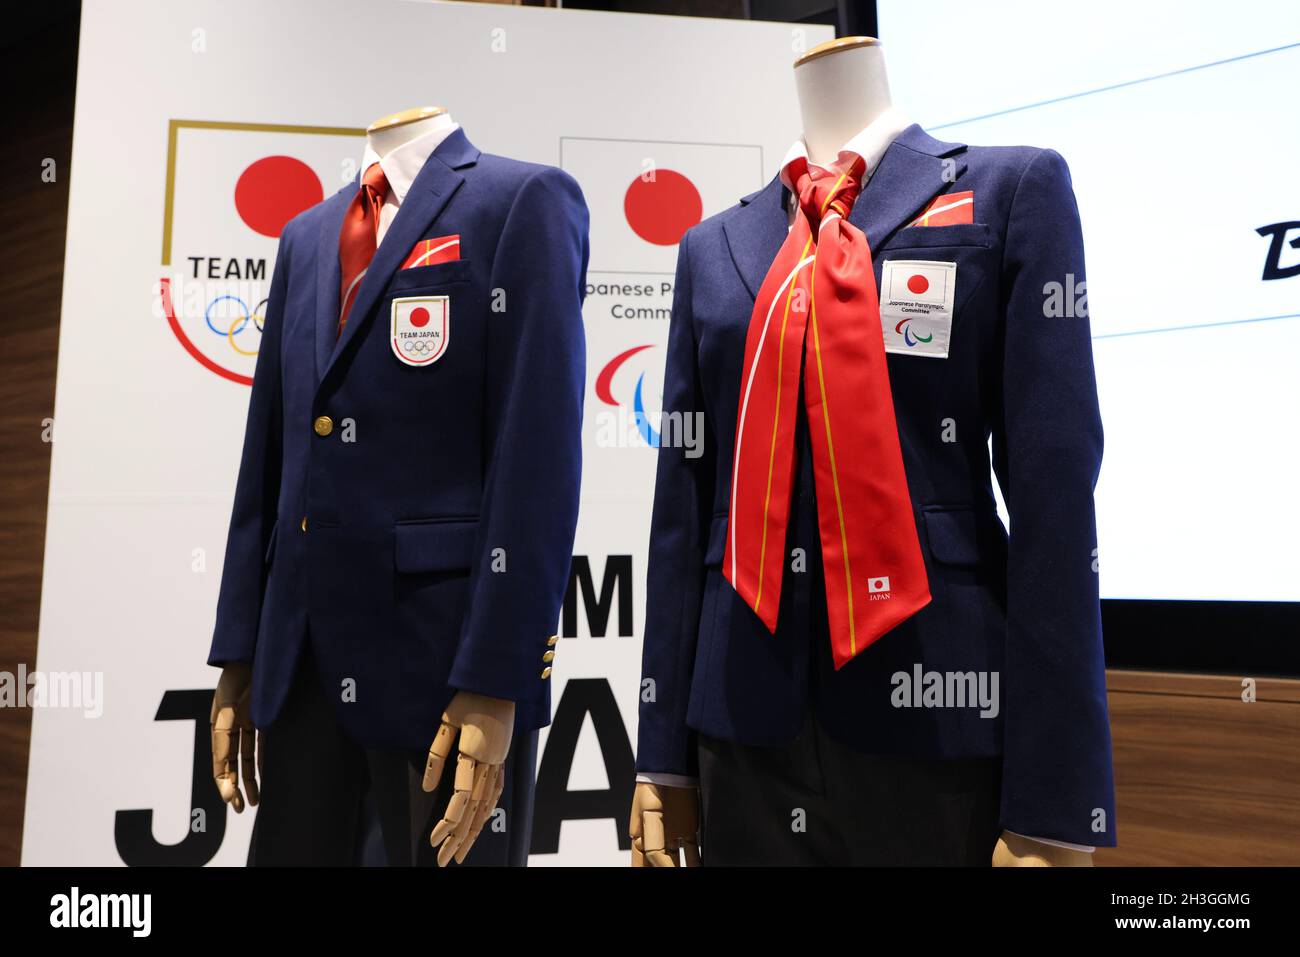 27 DE OCTUBRE de 2021 : Comité Olímpico Japonés (JOC), Comité Paralímpico Japonés (JPC) presenta los uniformes oficiales de la delegación japonesa para los Olímpicos y Paralímpicos de Beijing en